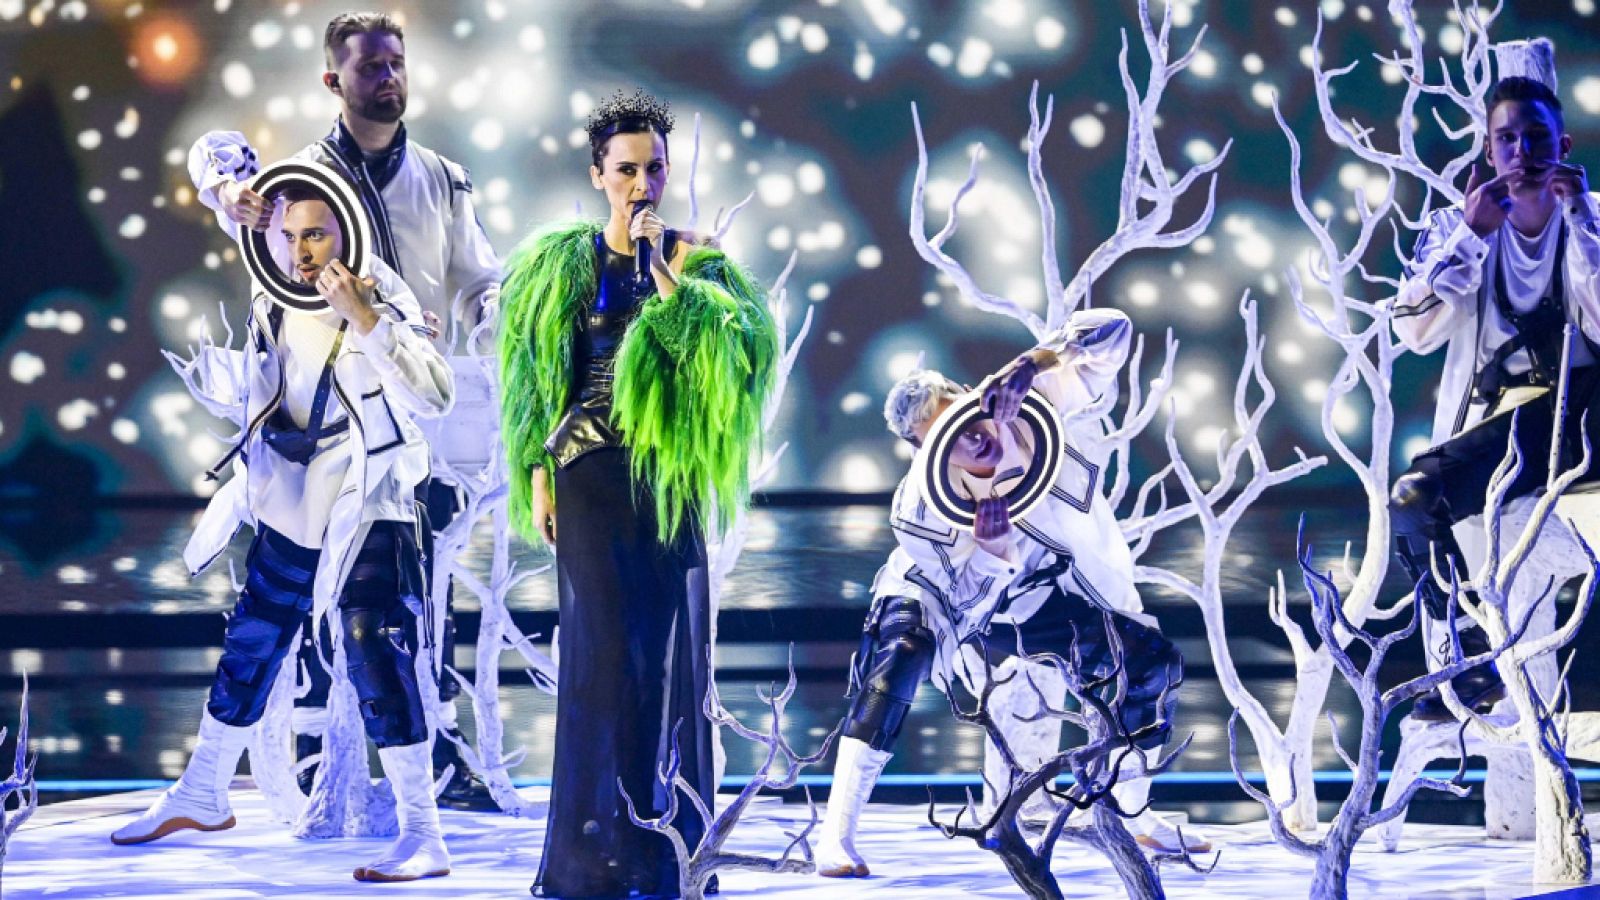 Eurovisión 2021 - Ucrania: Go_A canta "Shum" en la primera semifinal